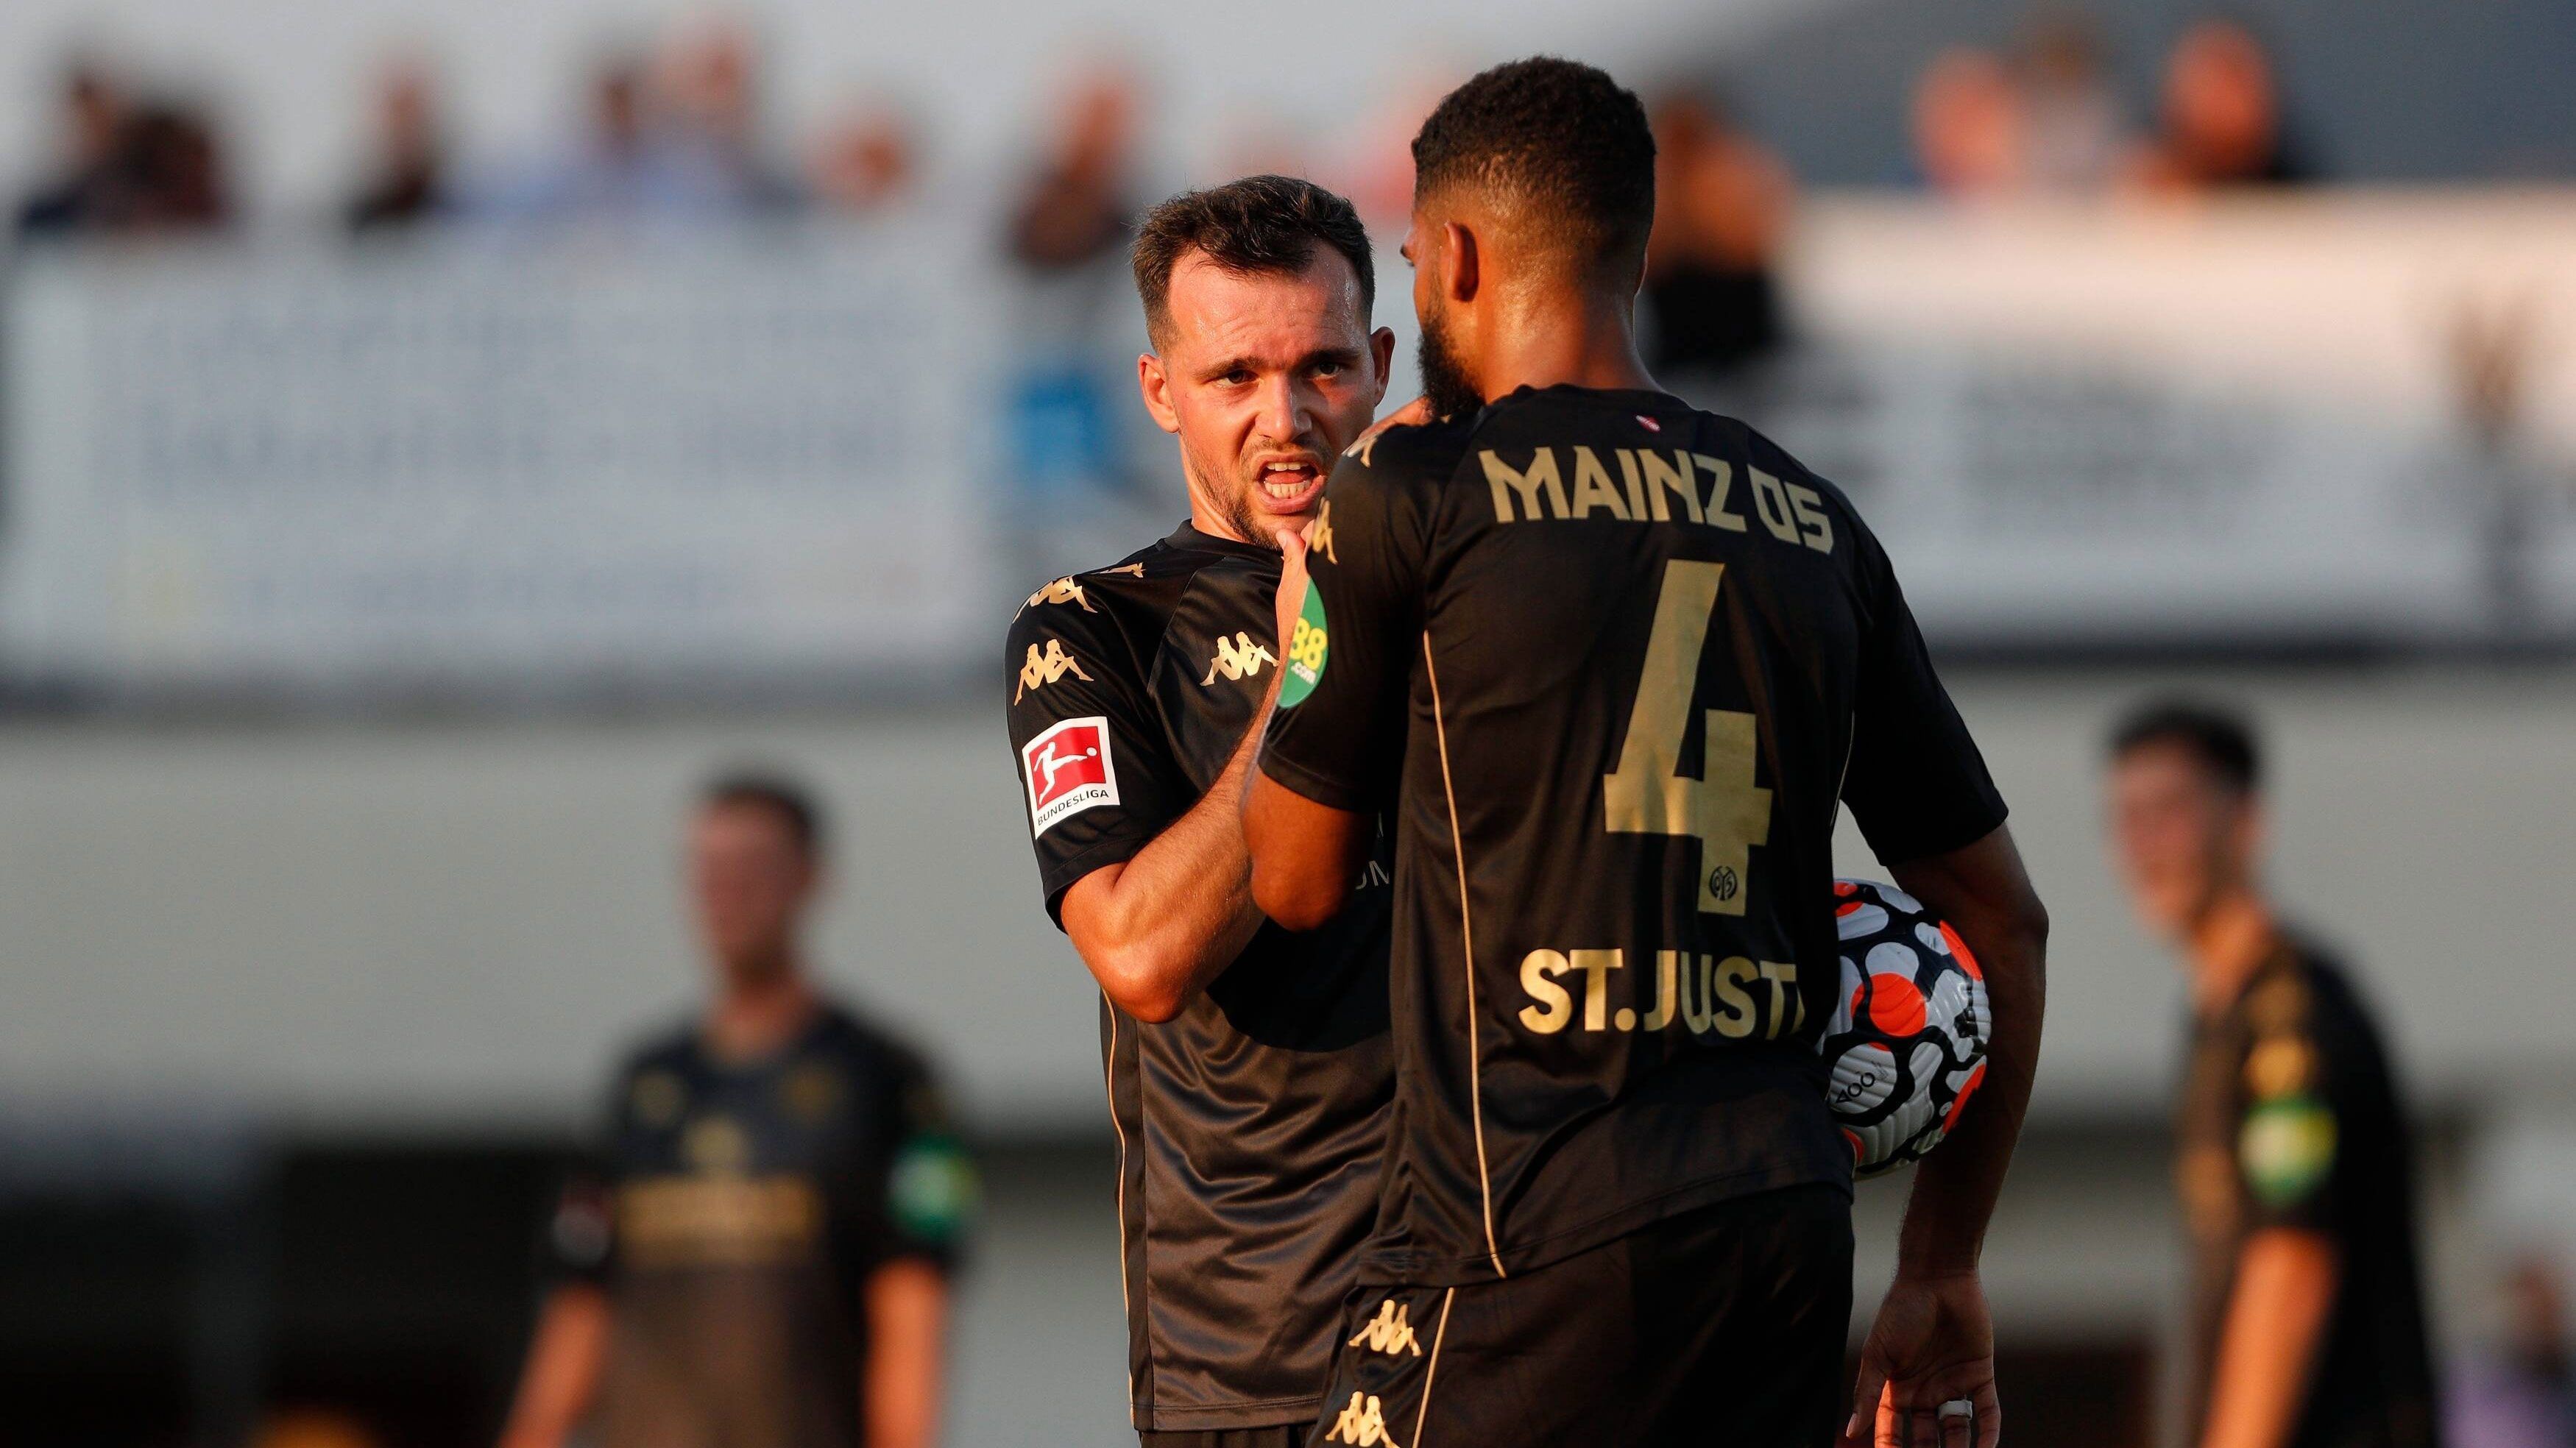 
                <strong>1. FSV Mainz 05</strong><br>
                Der 1. FSV Mainz 05 muss dringend noch im Angriff nachlegen, um sich dort breiter aufstellen zu können. Ansonsten dürfte einiges davon abhängen, ob der gefühlt von der halben Bundesliga gejagte und schon erwähnte St. Juste bleibt oder abgegeben wird. Auszuschließen ist wohl auch nicht, dass Kapitän Moussa Niakhate eine Luftveränderung anstrebt. Solche Transfers würden der Mannschaft enorm weh tun.
              